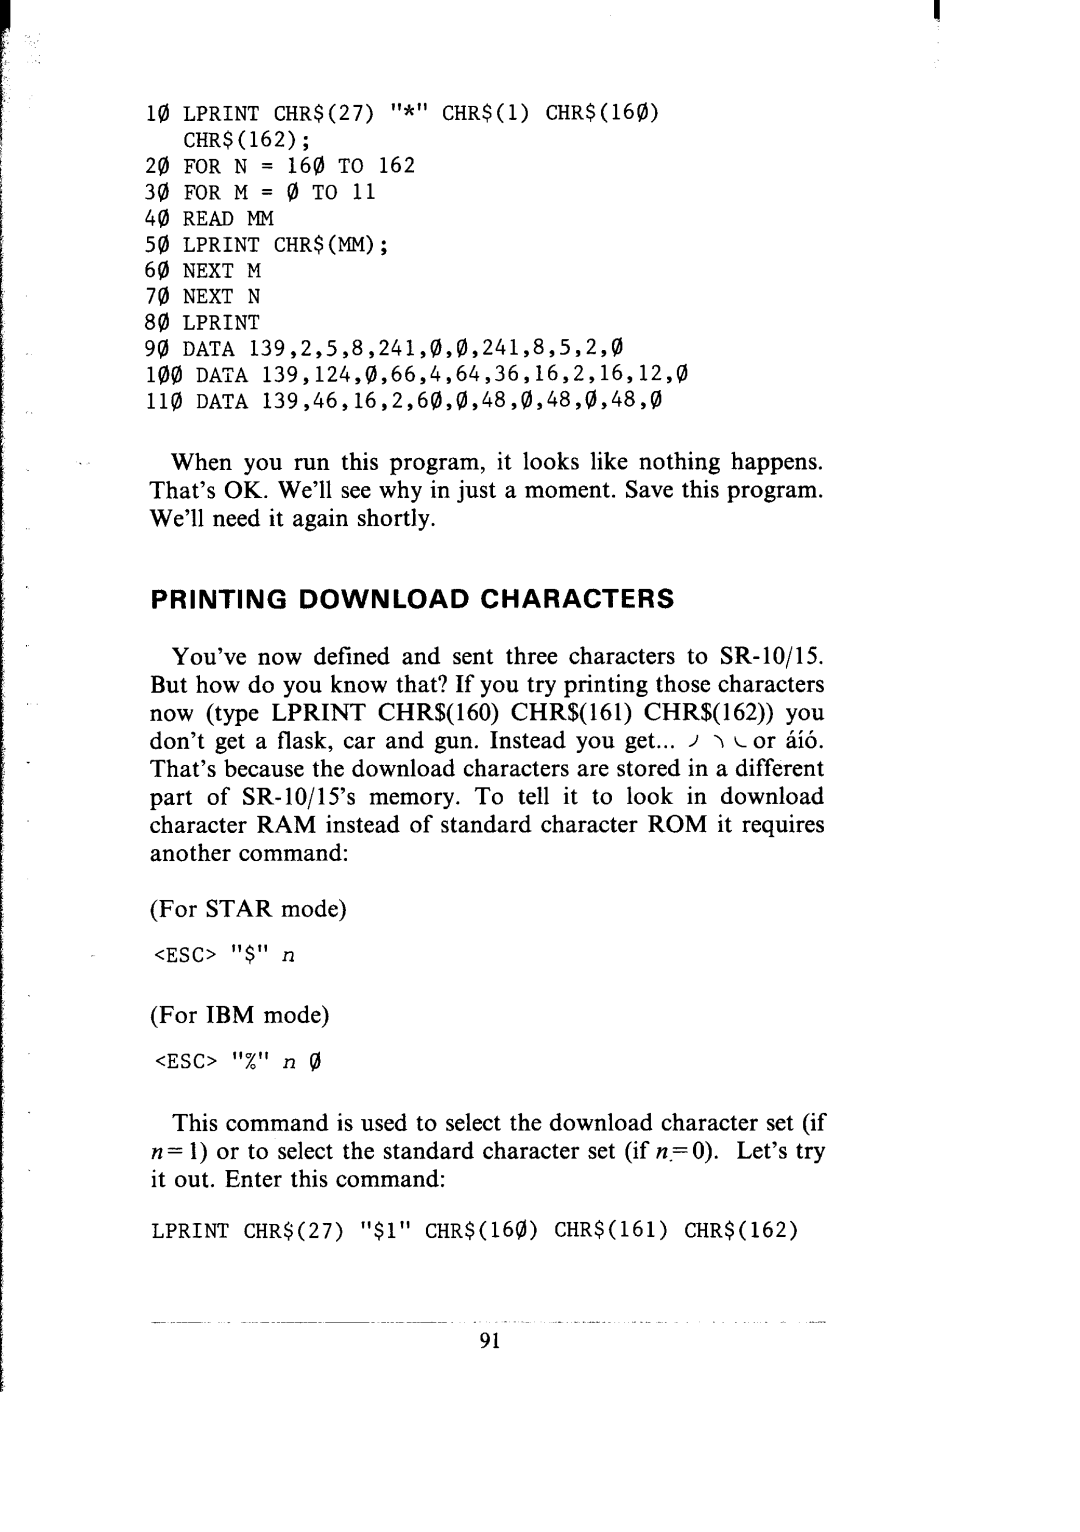 Star Micronics SR-10/I5 Printing Download Characters, LPRINT CHR$27 * CHR$l CHR$160 CHRS162 20 FOR N = 160 TO, ESC $ n 